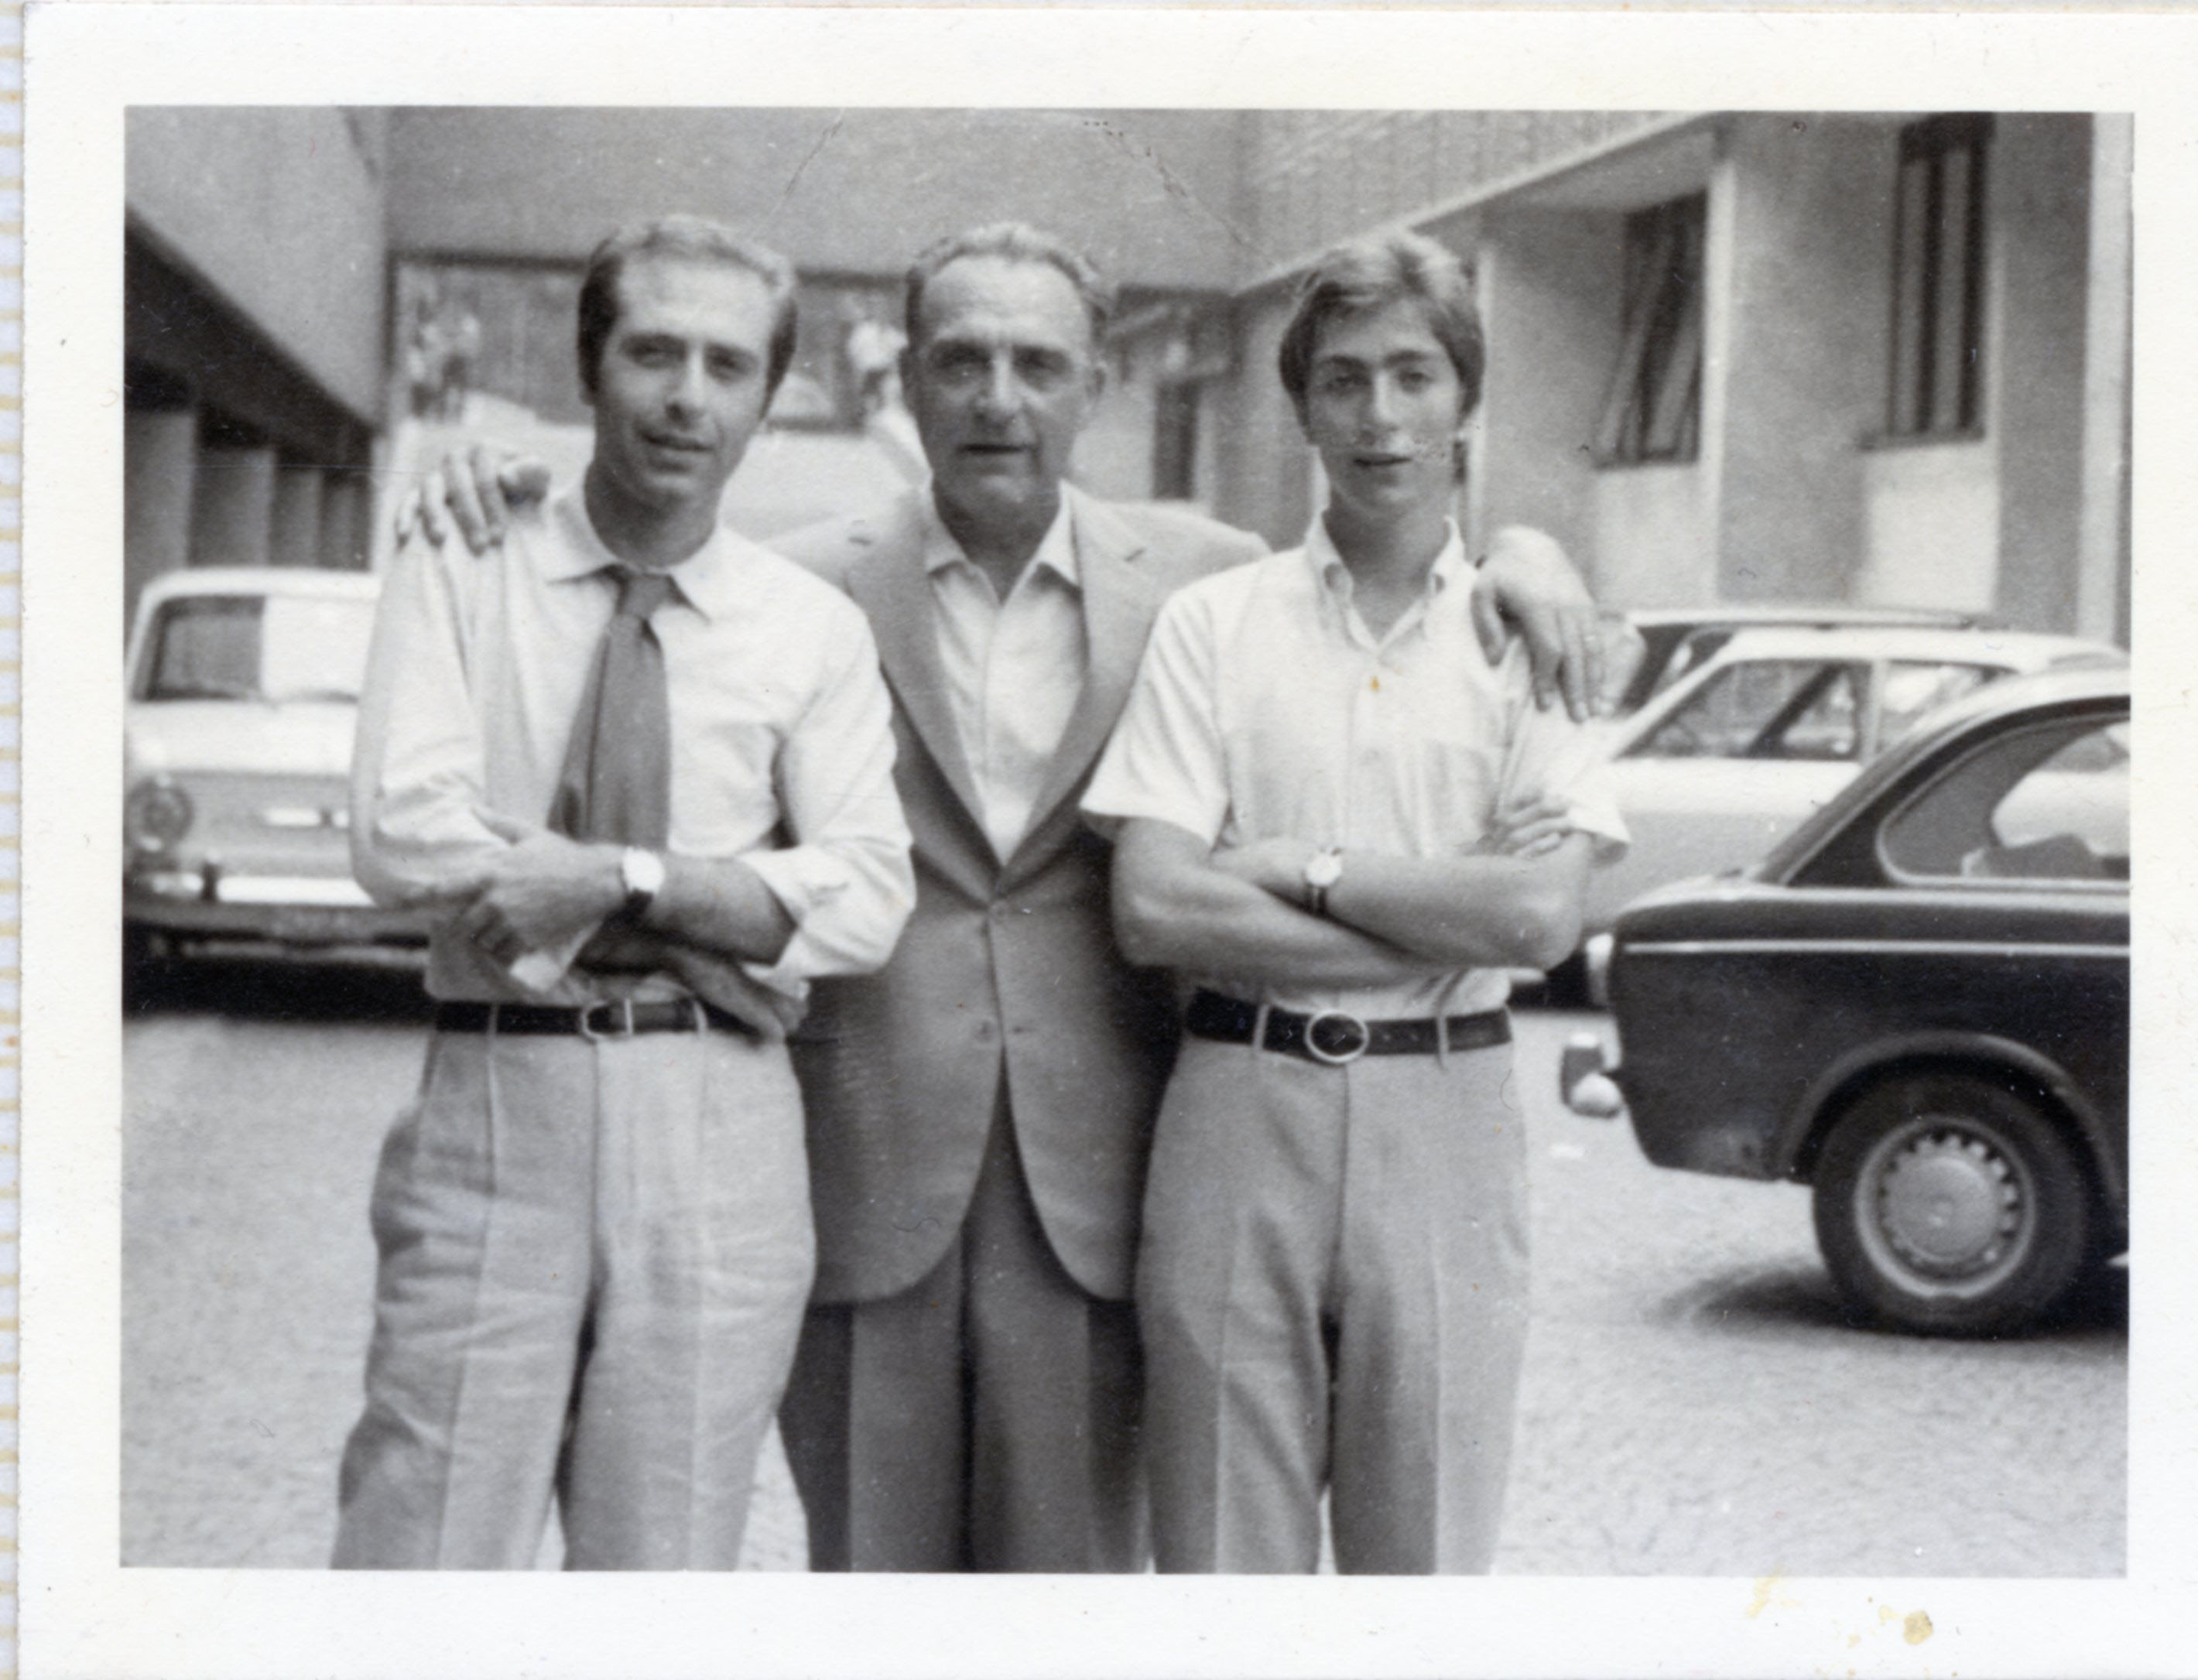 24 luglio 1969. Milano. In occasione della Laurea in Architettura di Annio Maria Matteini. Da destra Ennio, il padre Nevio, il fratello Annio